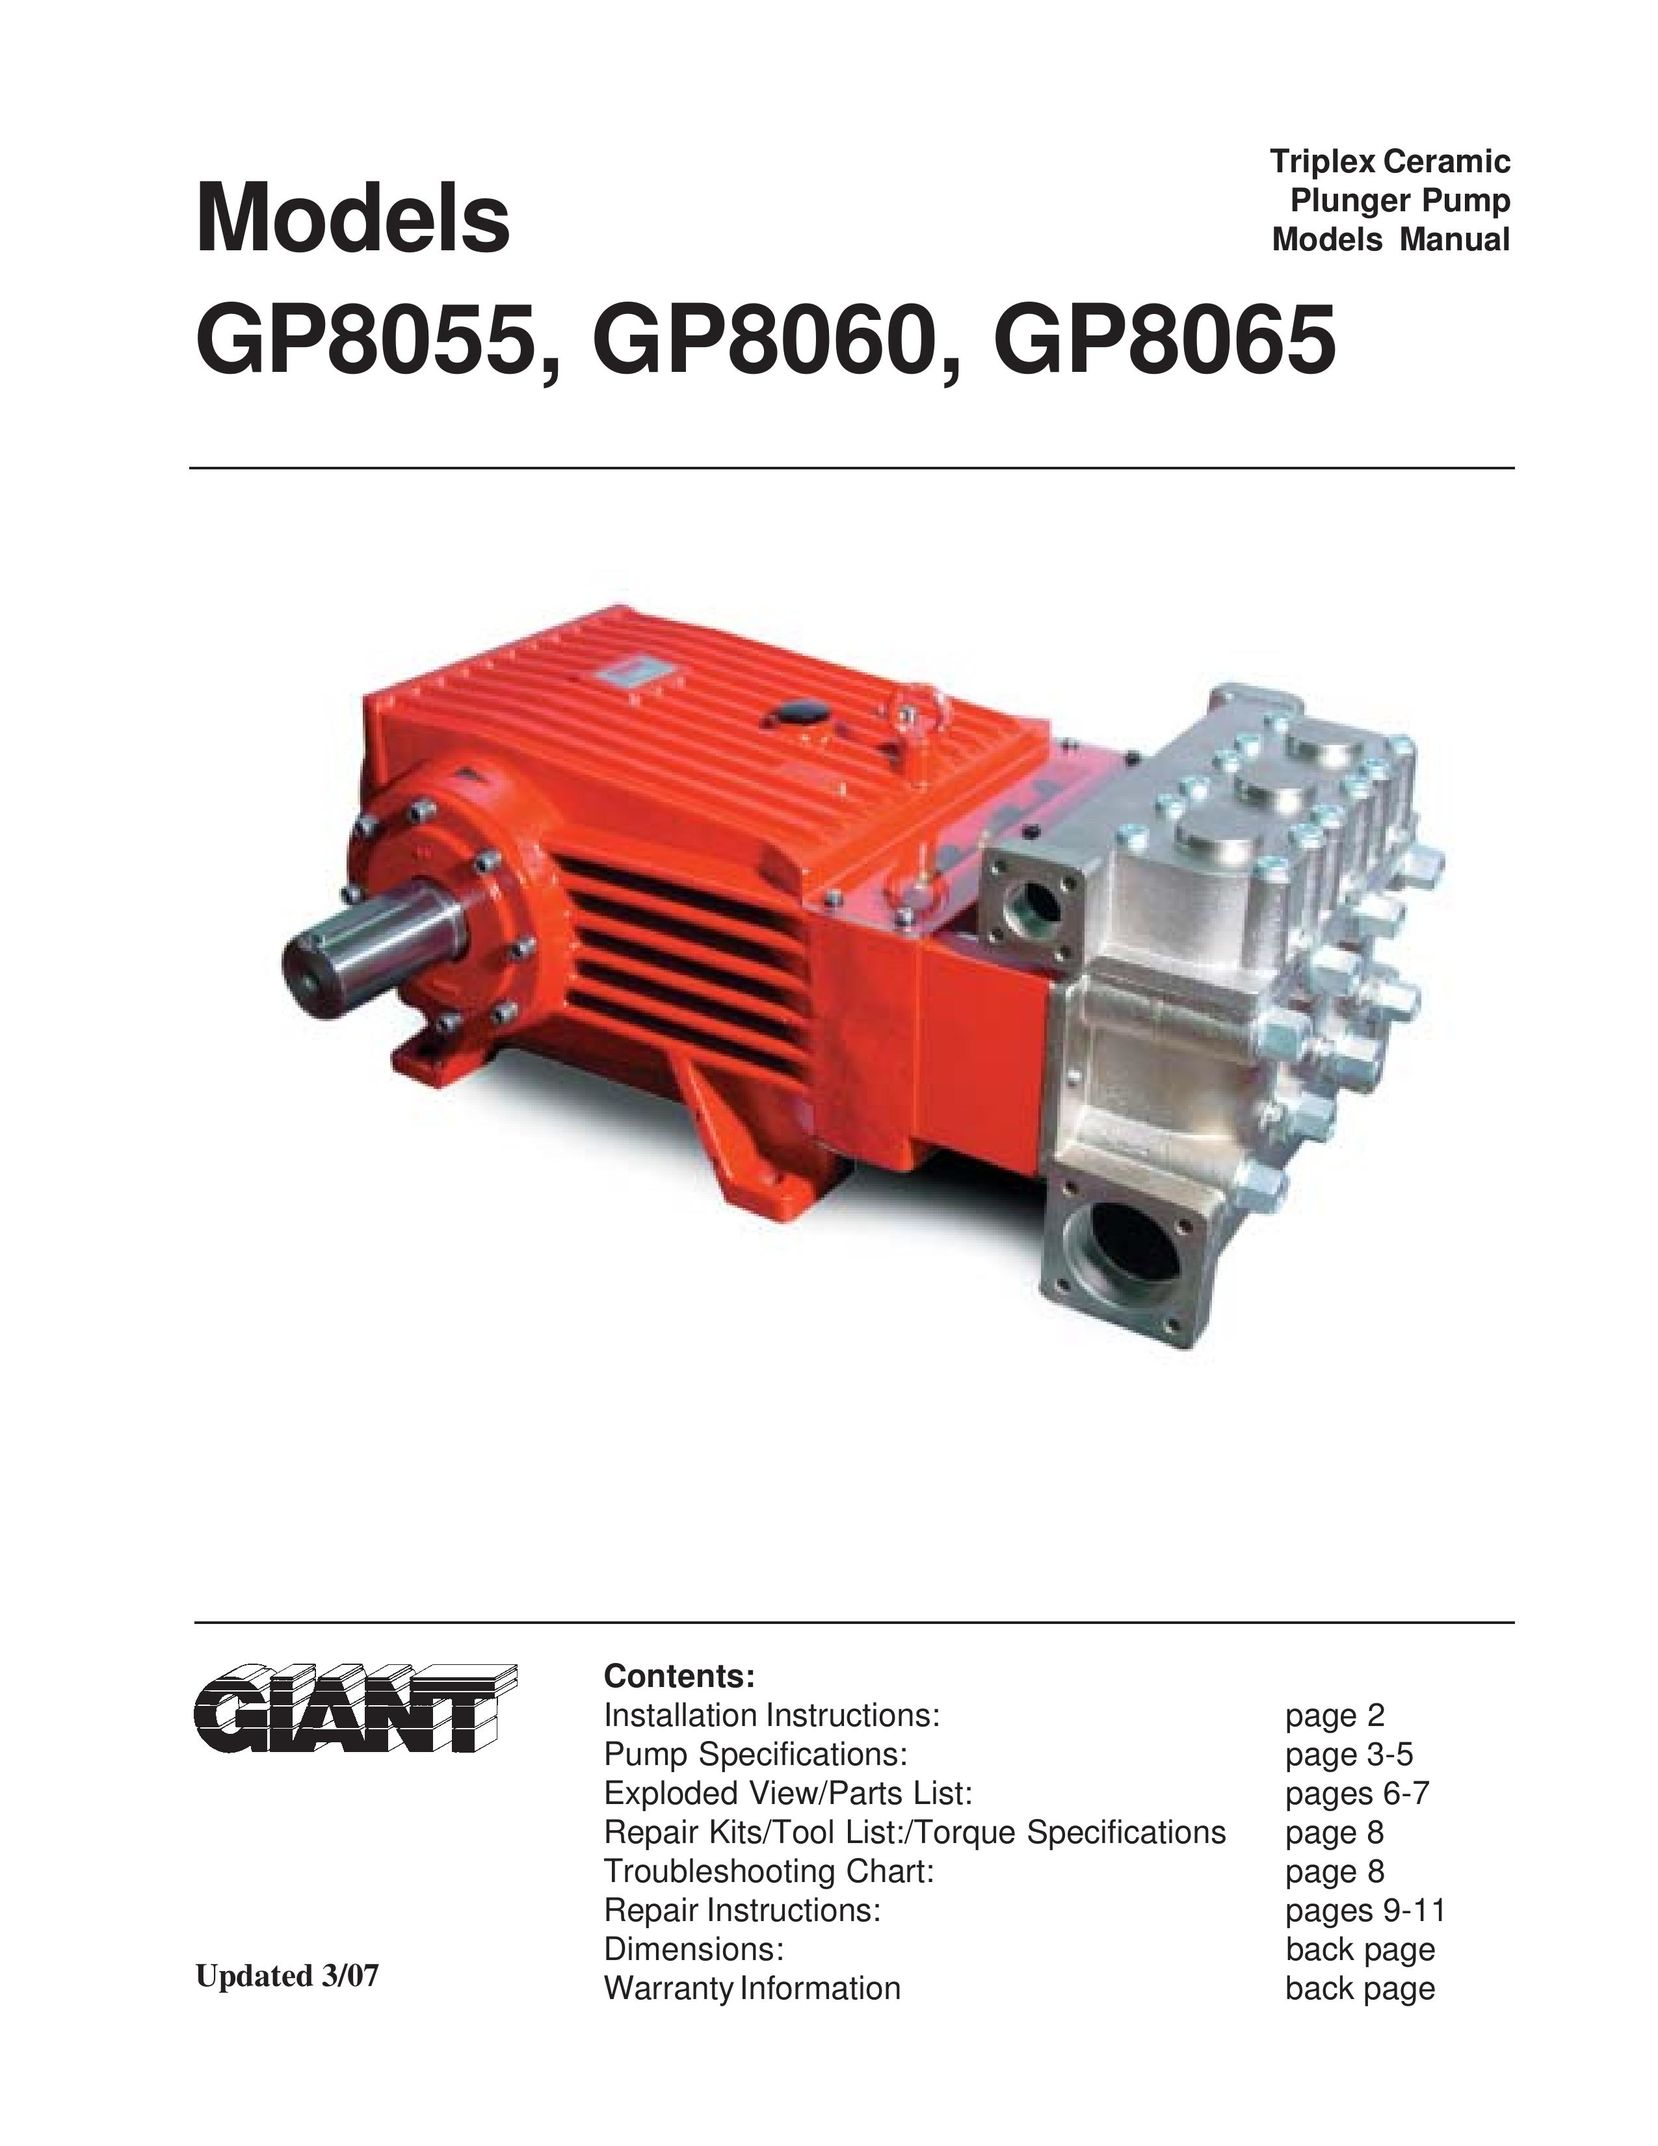 Giant GP8055 Water Pump User Manual